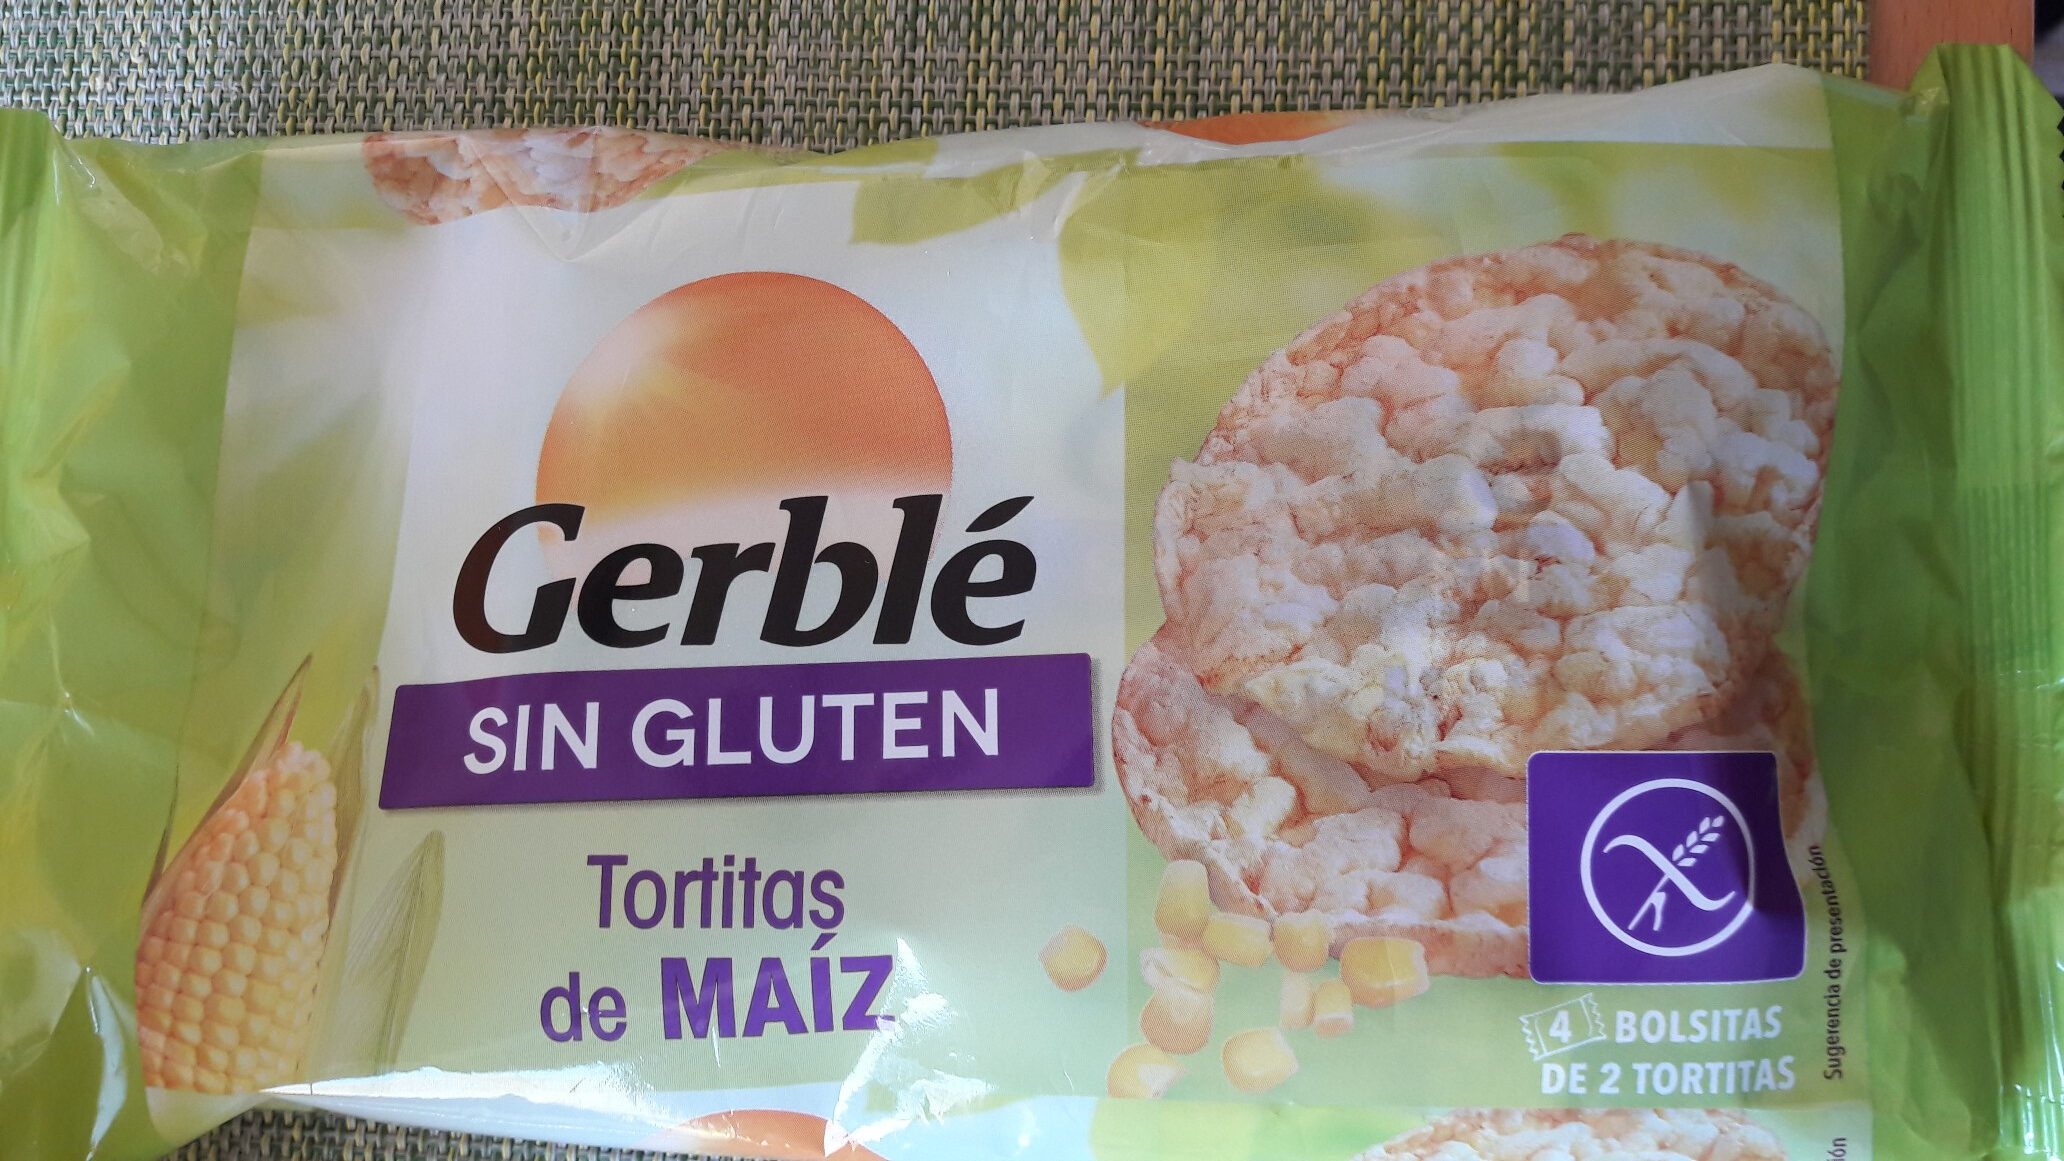 Tortitas de maíz sin gluten - Product - es